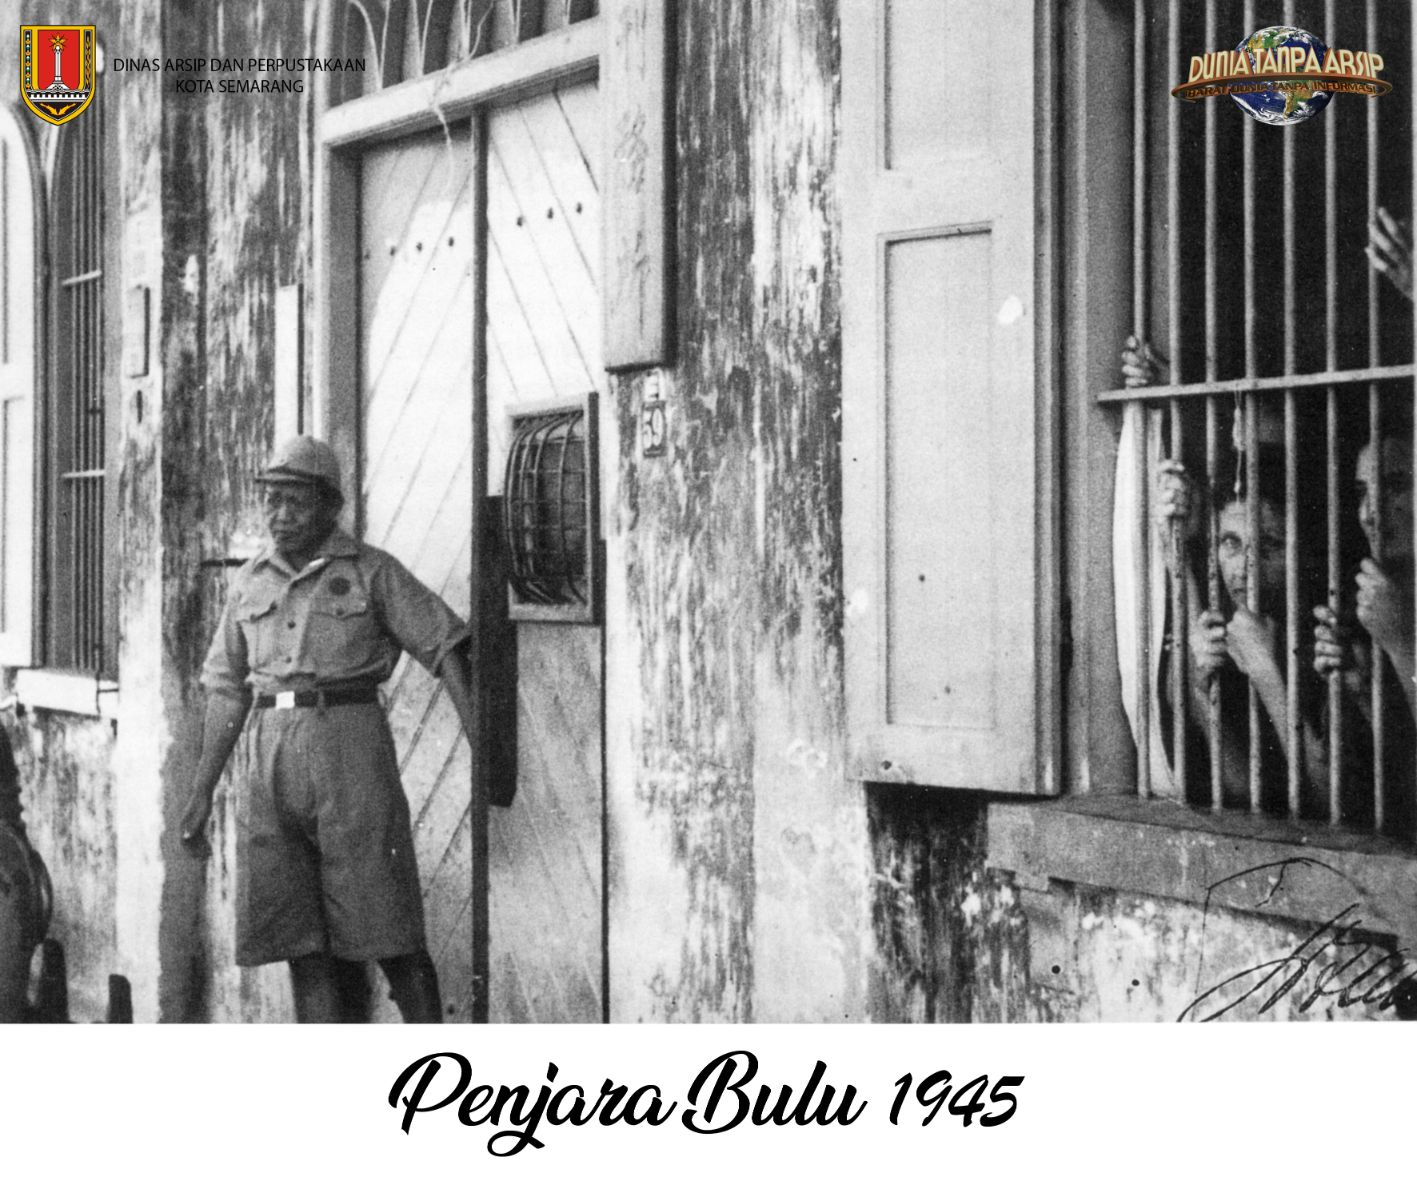 Penjara Bulu 1945